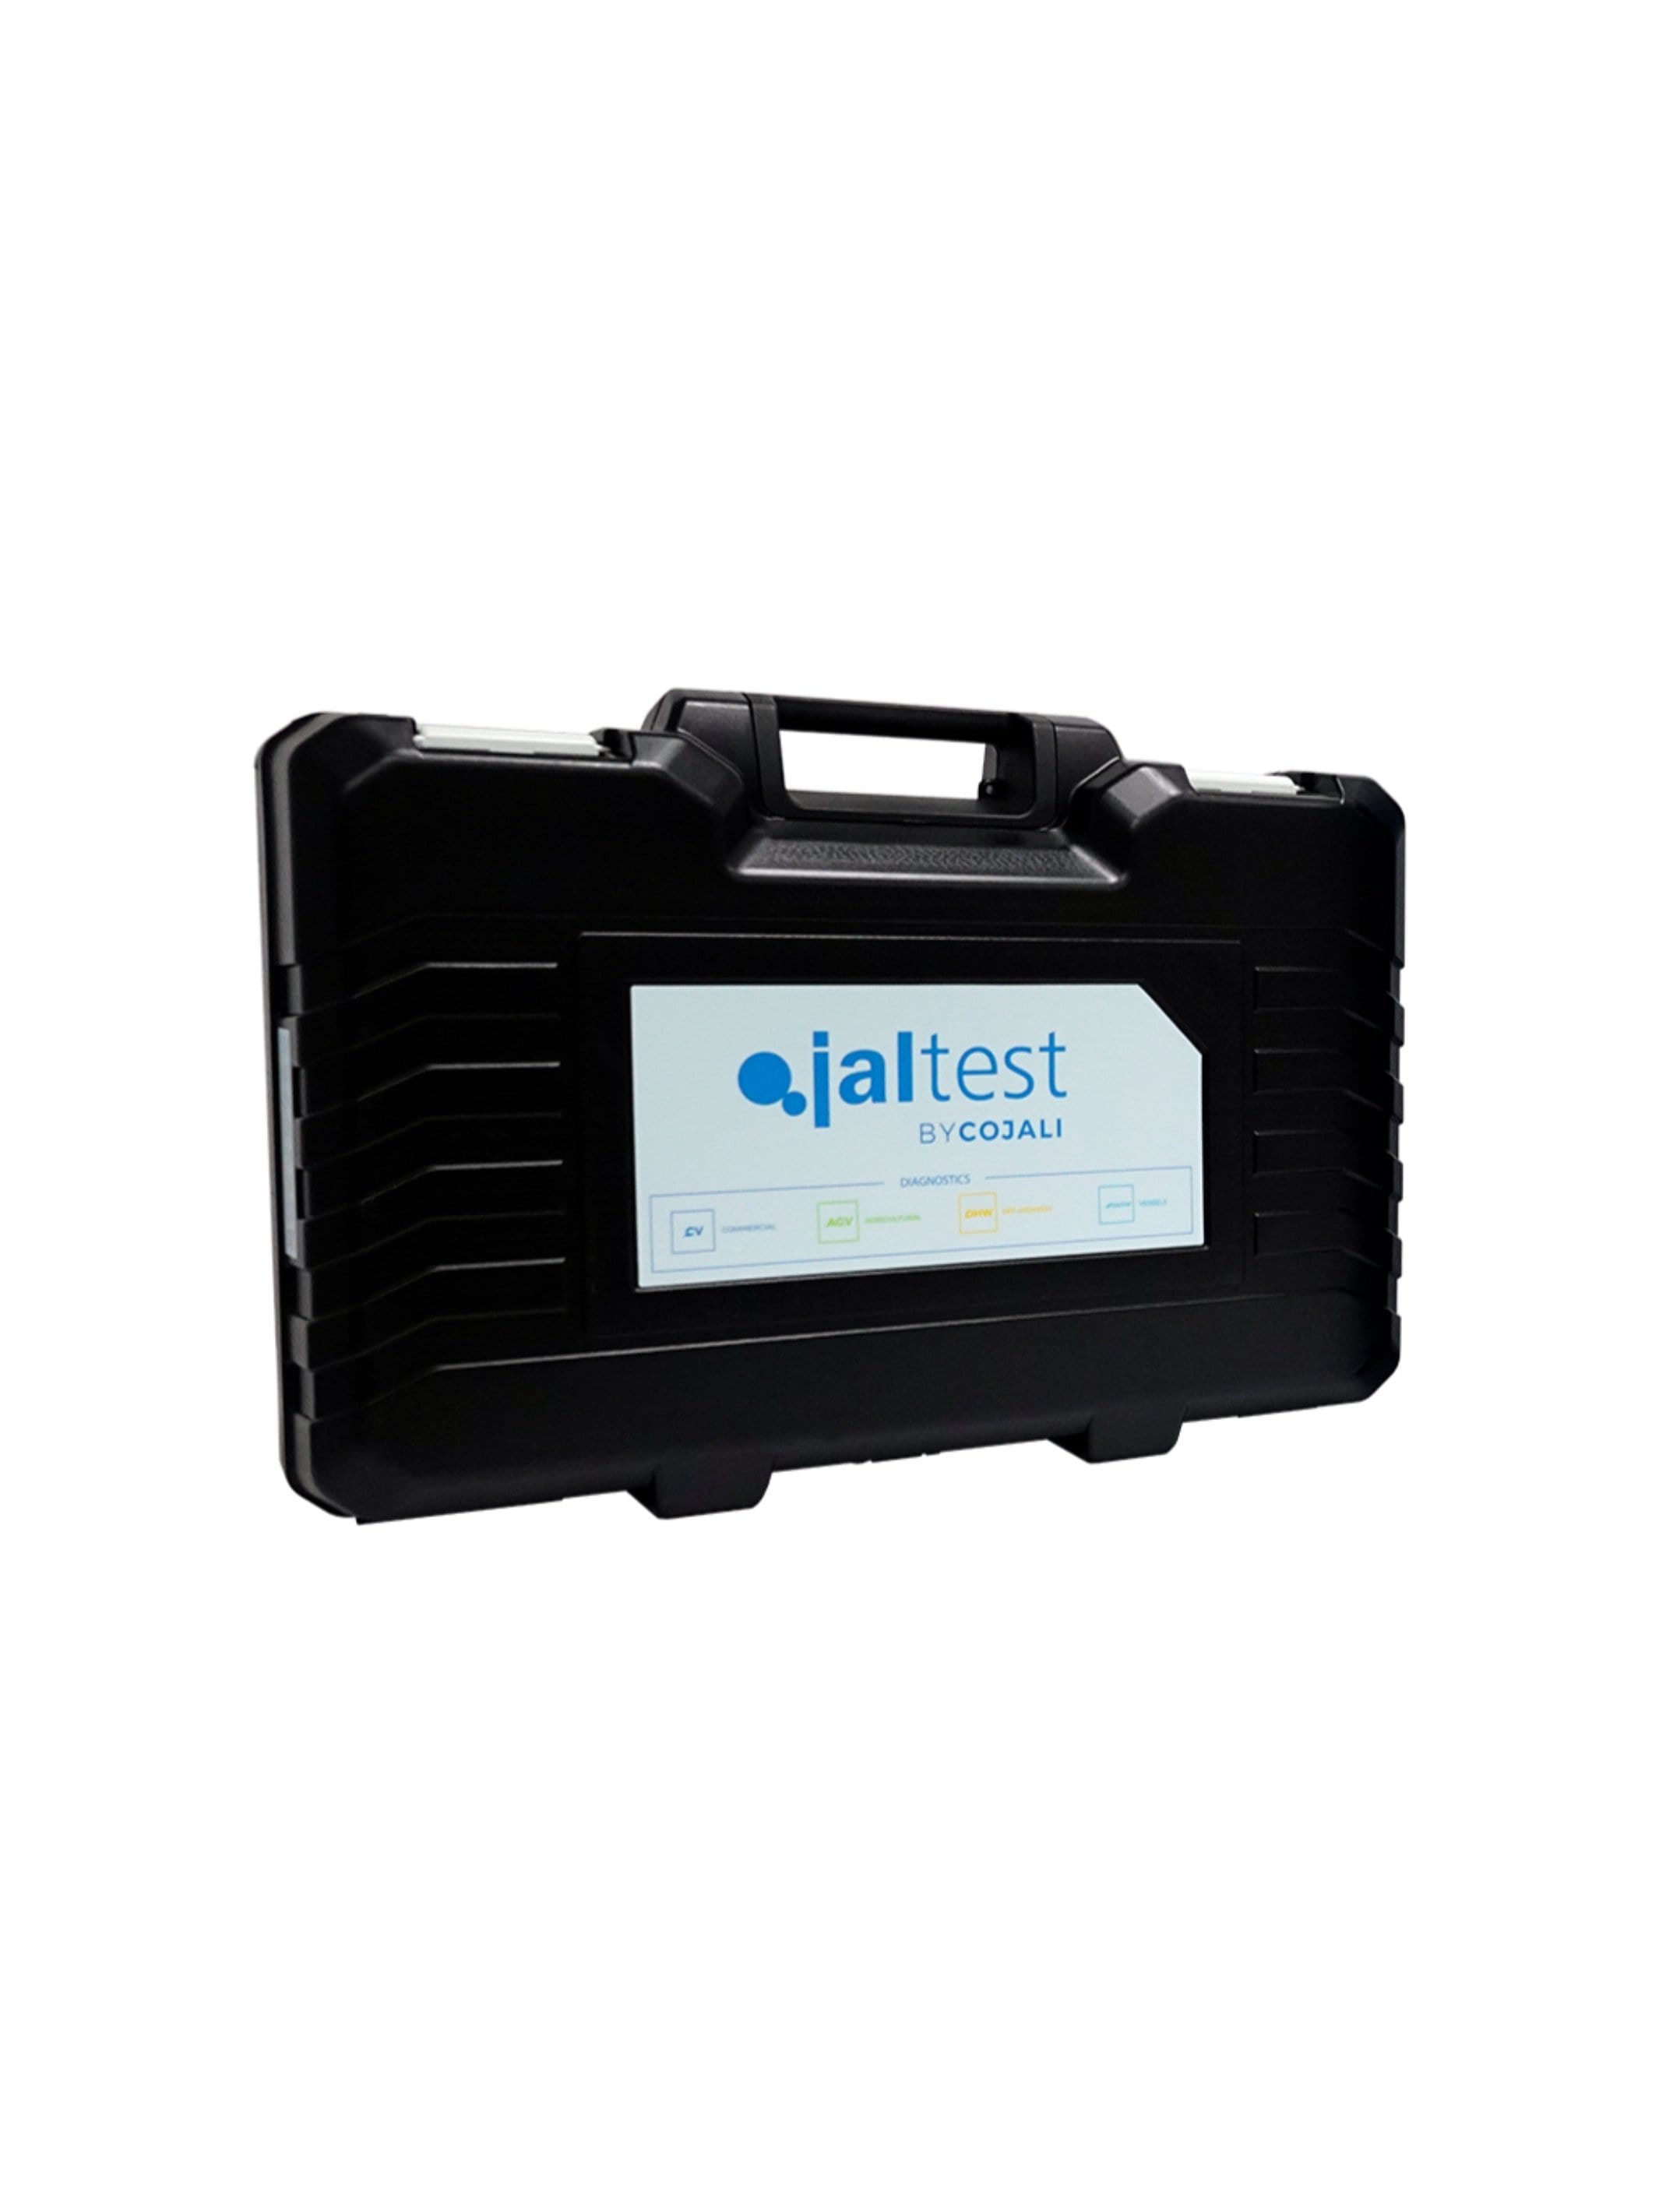 70003015 Transport Hardcase - Jaltest Deluxe Marine Outboard Motor Diagnostic Tool Kit